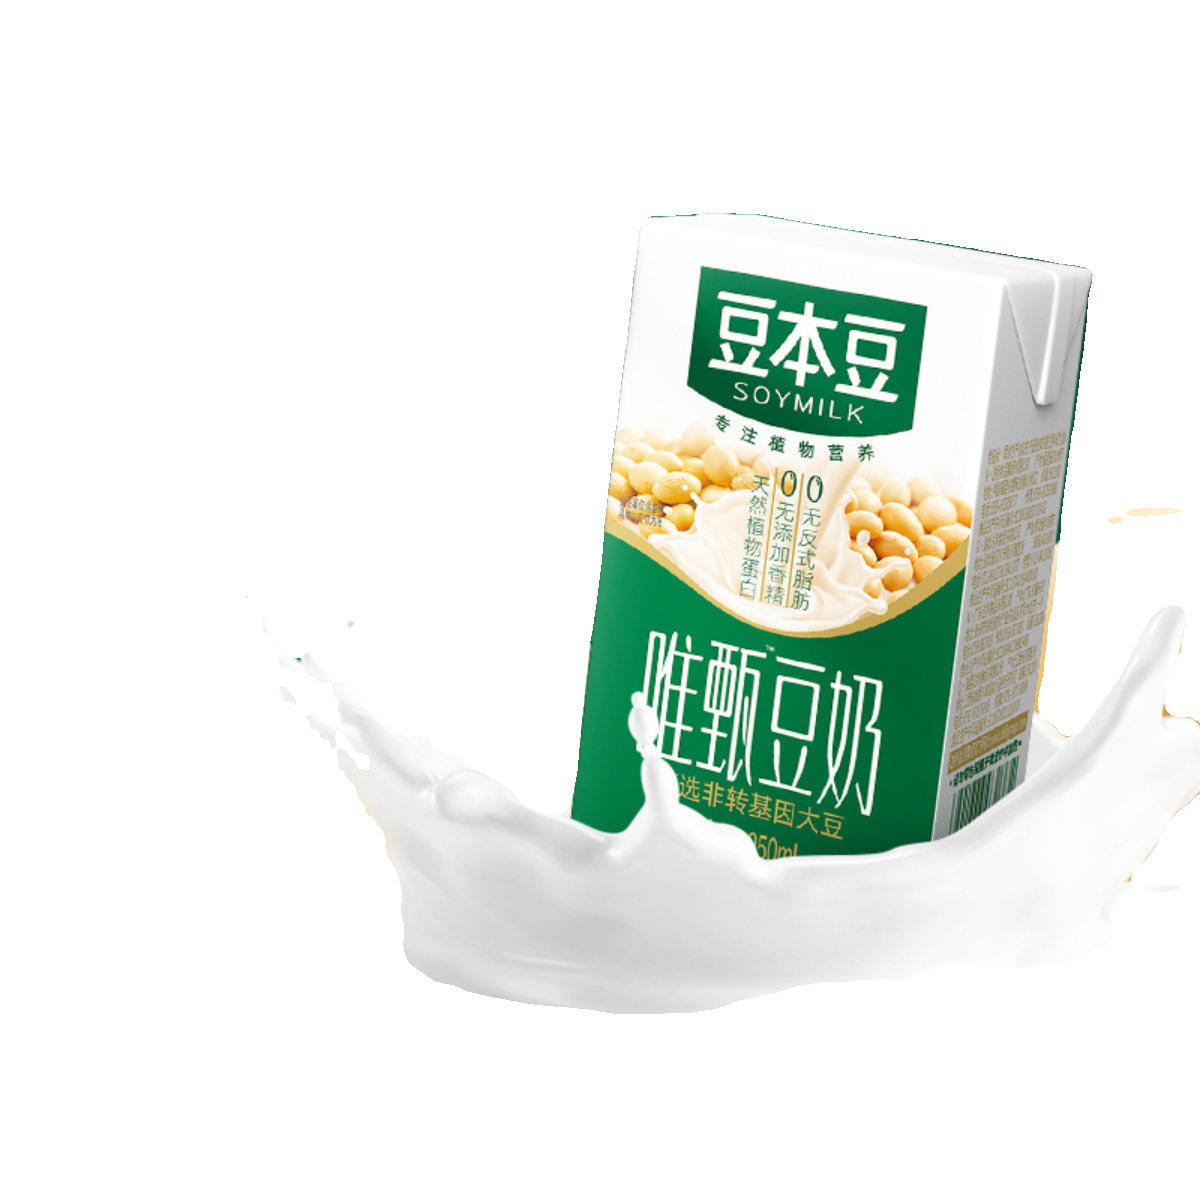 SOYMILK 豆本豆 唯甄豆奶原味250ml16盒植物蛋白饮料营养早餐奶正品整箱装 19.6